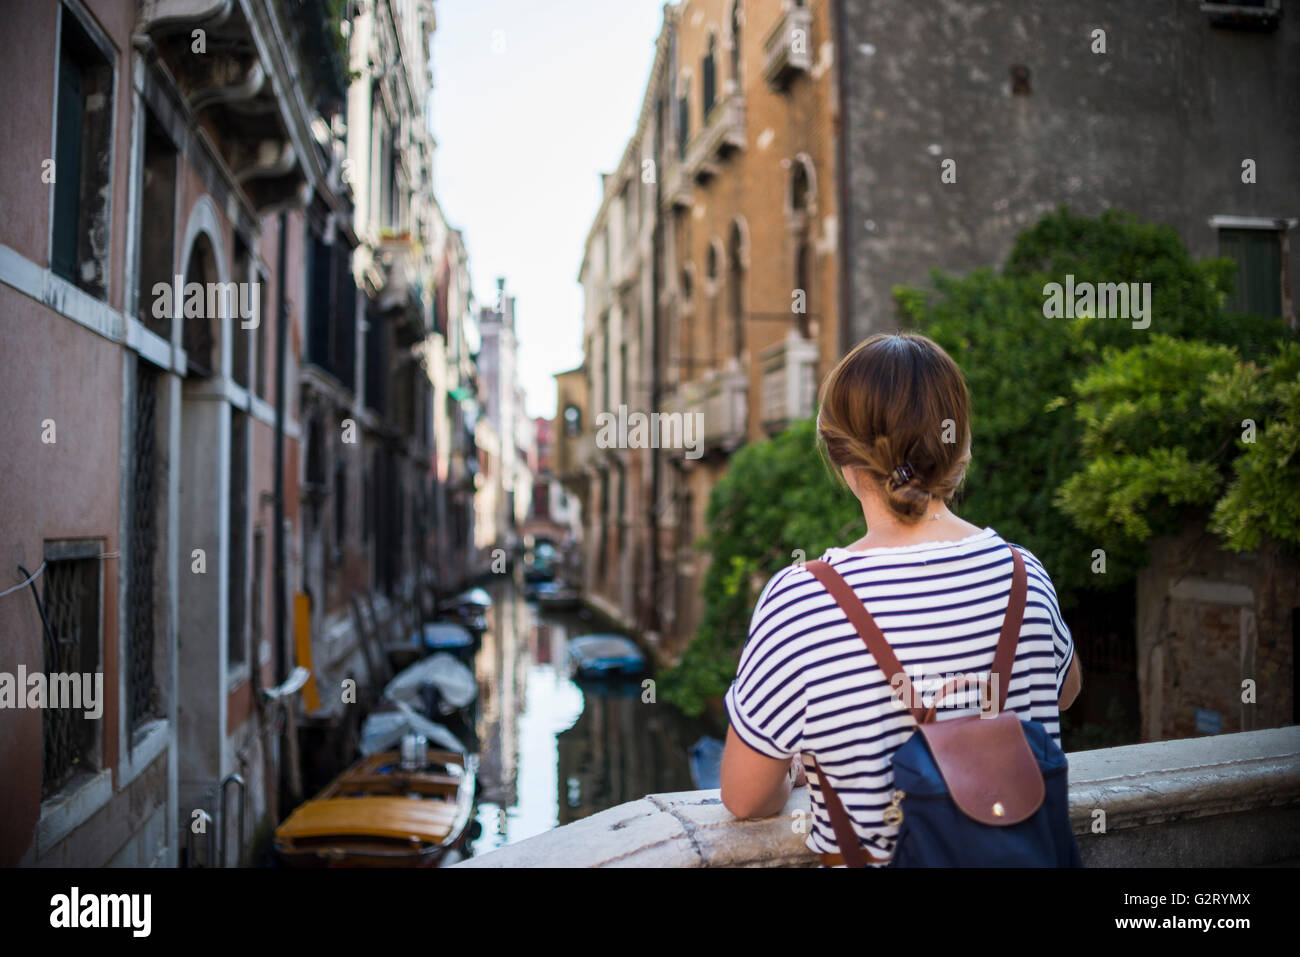 Una mujer joven con una mochila mirando los canales de Venecia tih barcos estacionados al lado de los edificios, Italia. Foto de stock